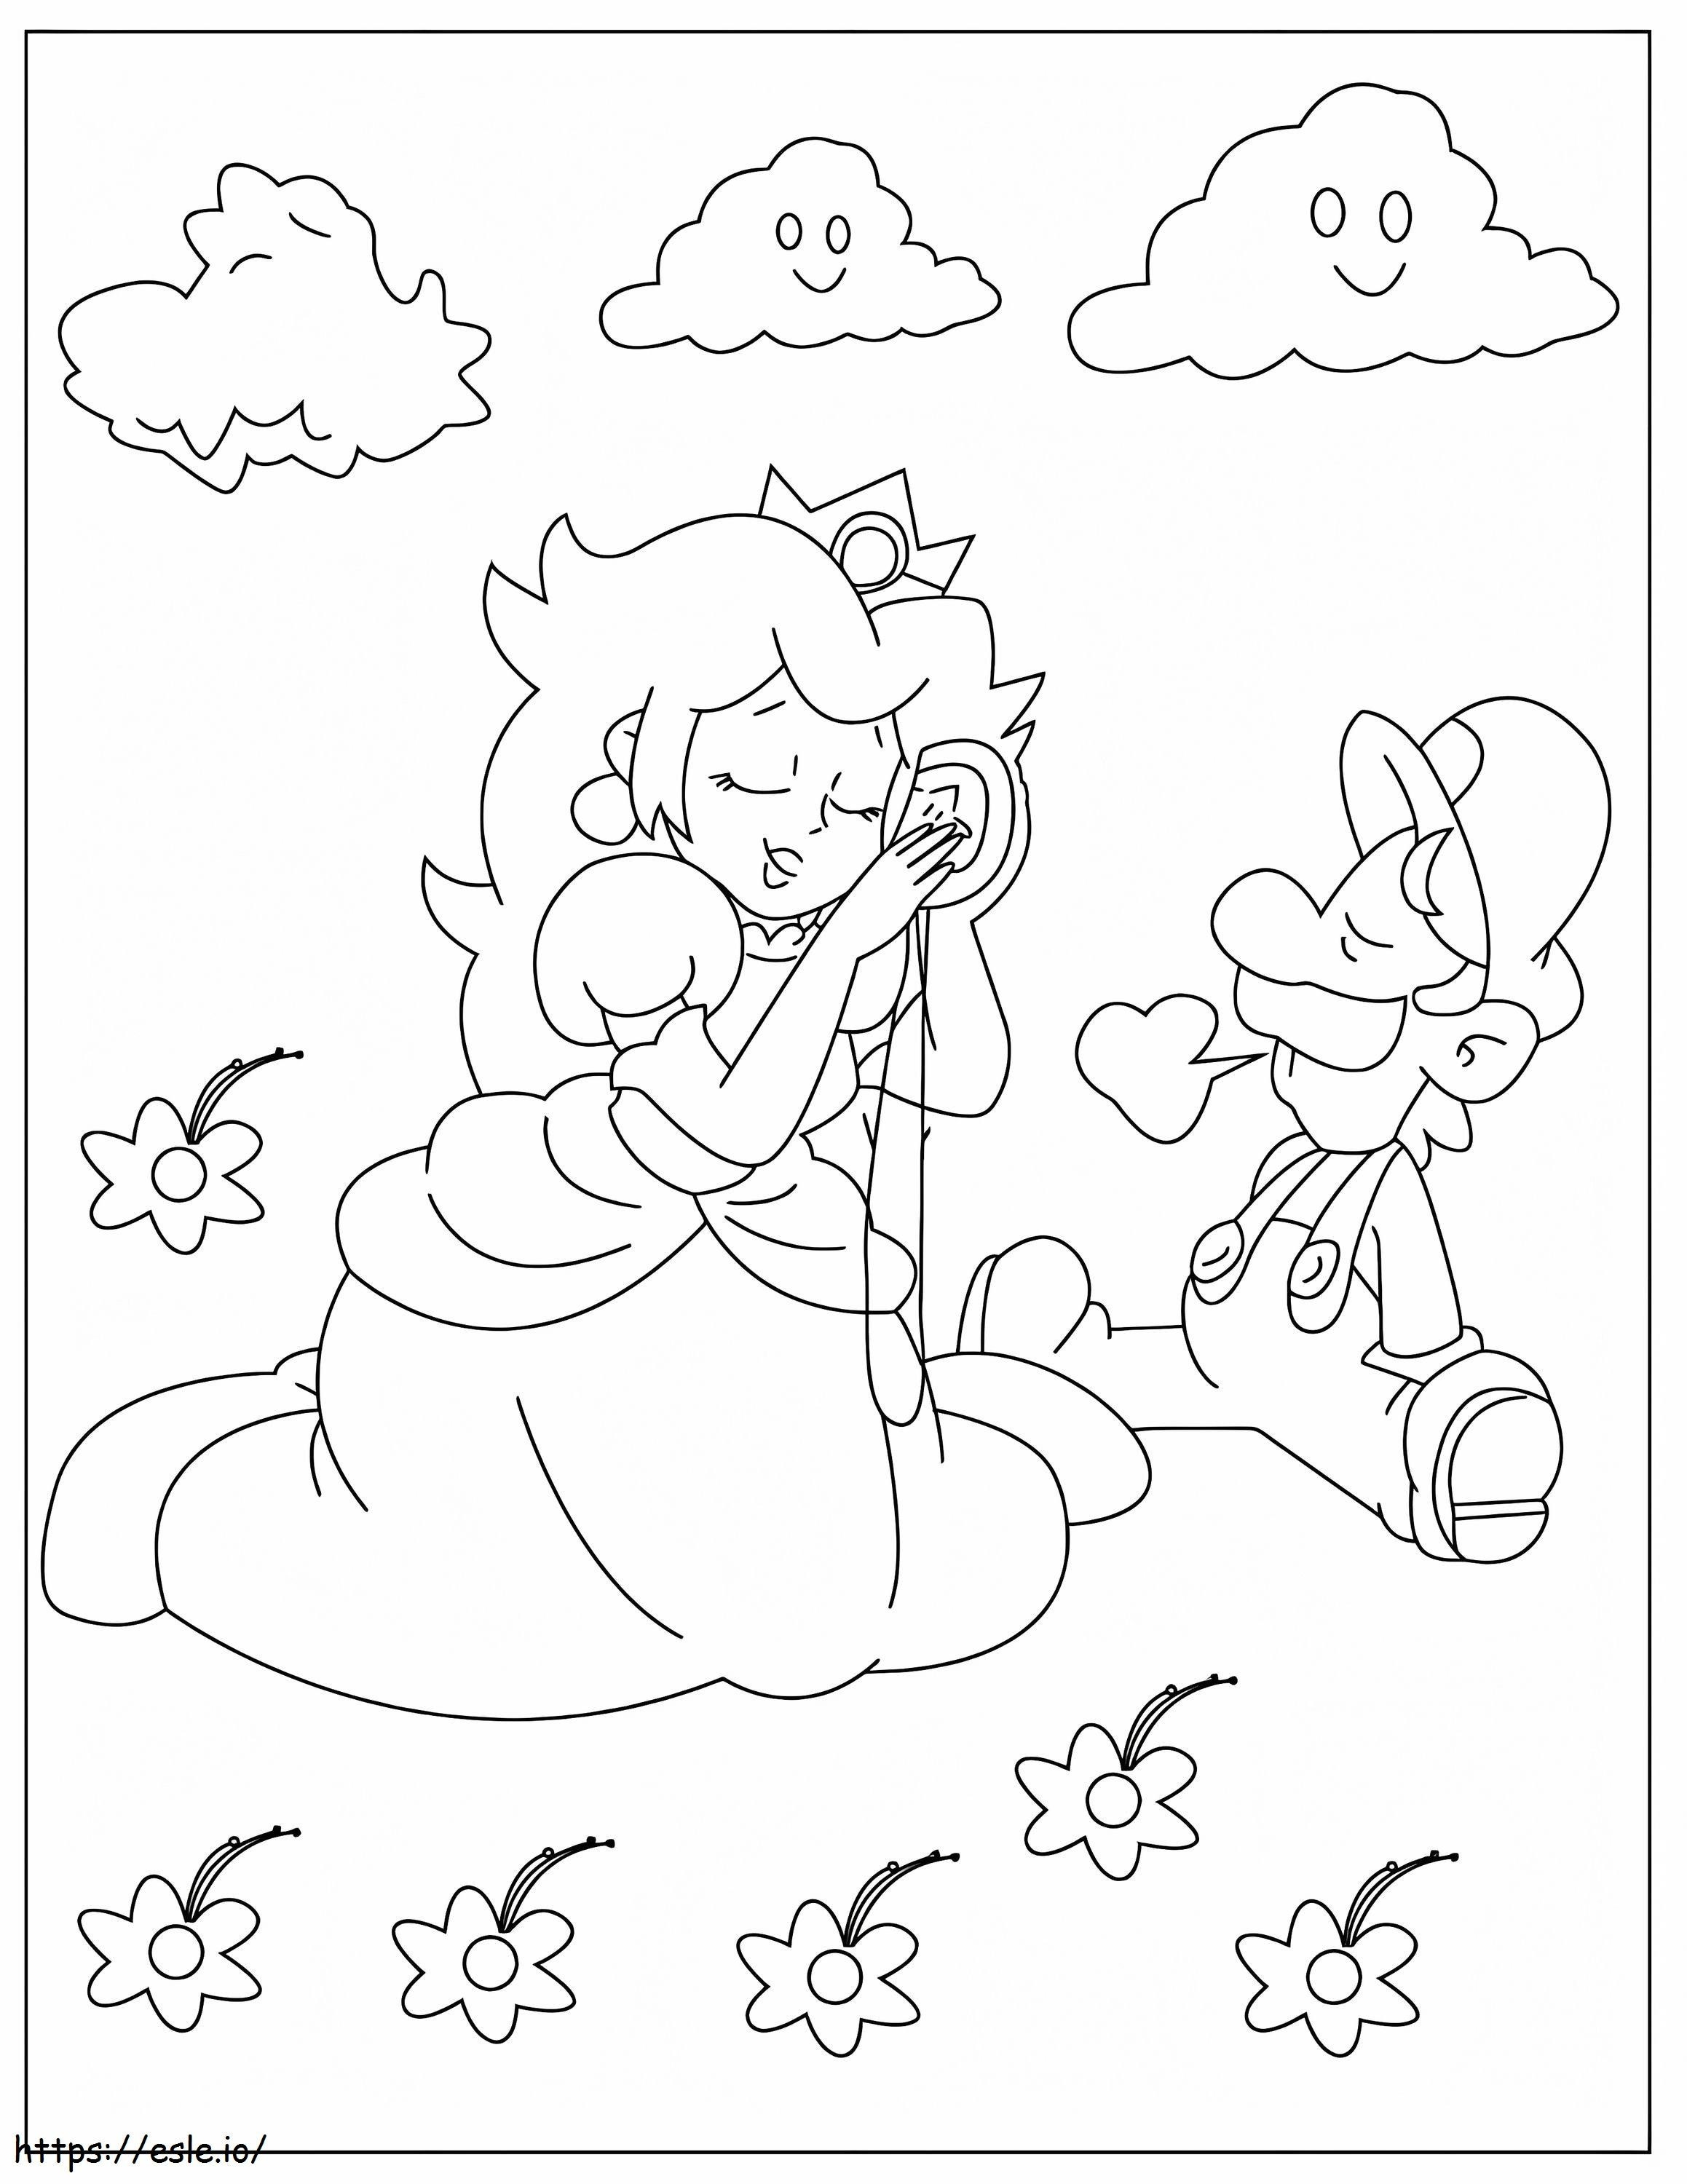 Divertido Mario y la Princesa Peach para colorear